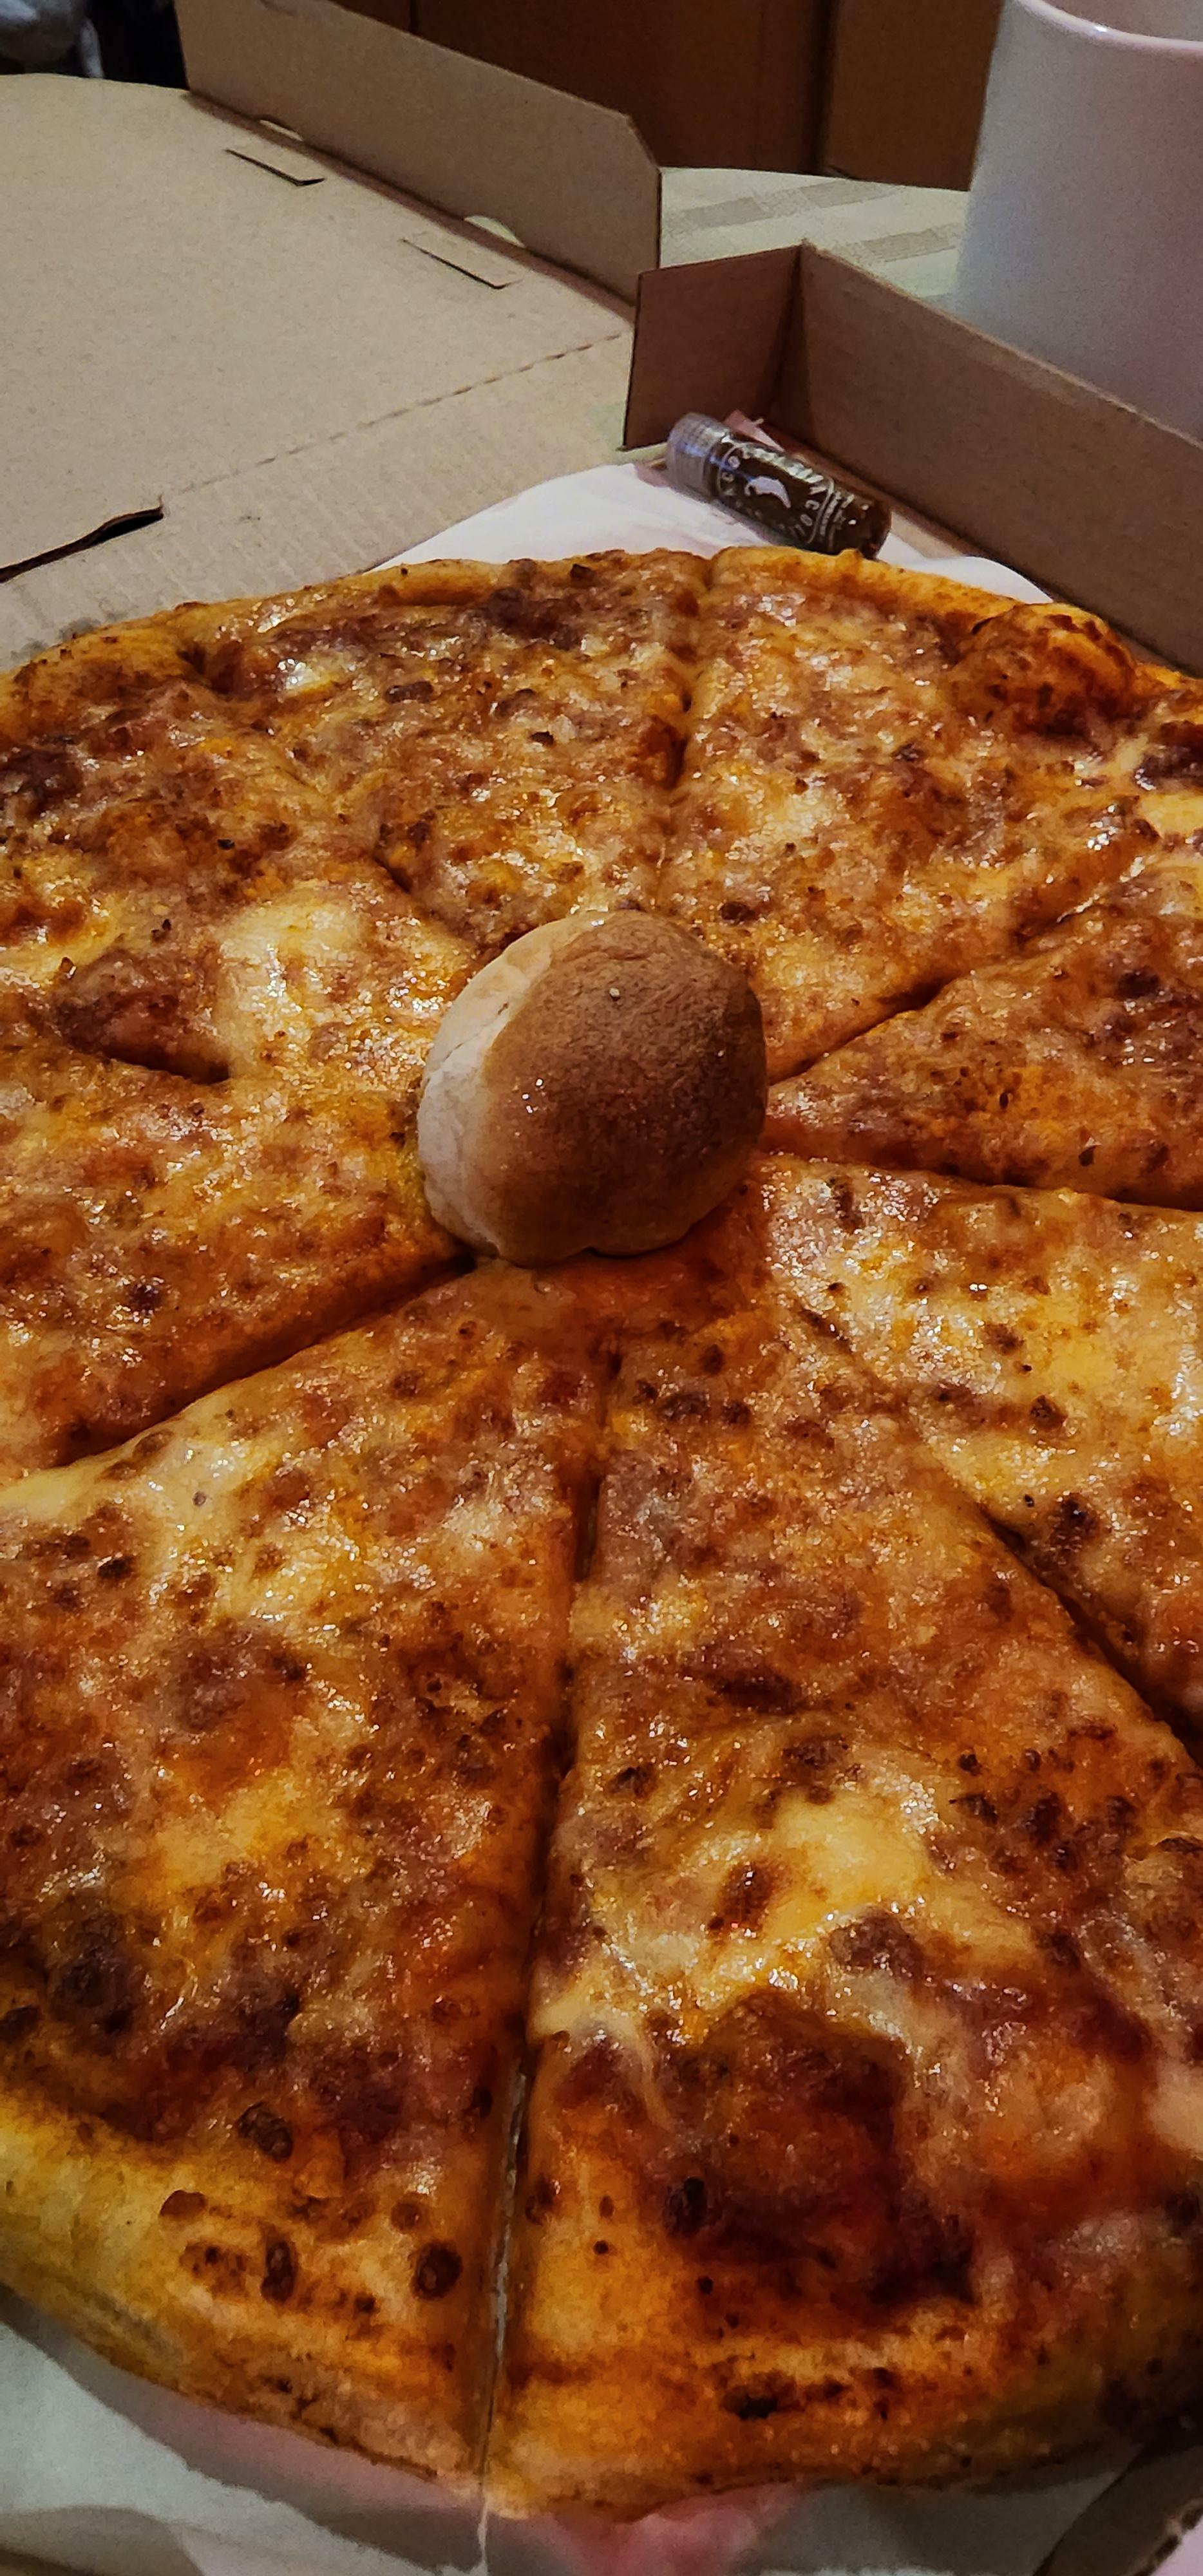 Une pizzeria locale a commencé à utiliser une boule de pâte au lieu des trucs en plastique pour garder la pizza intacte.